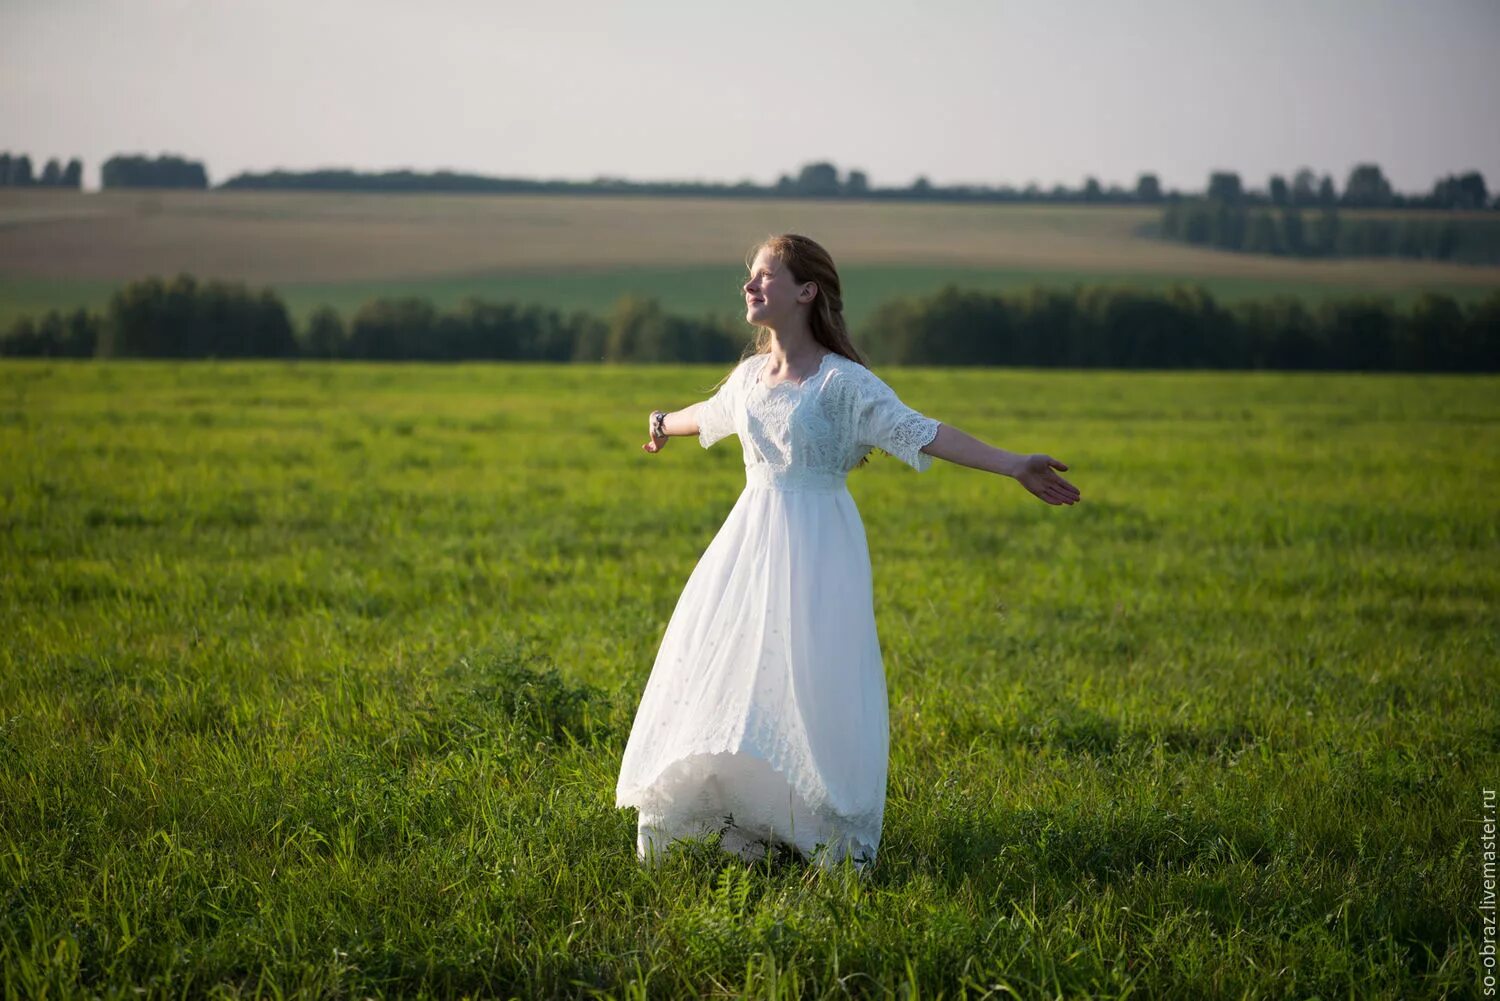 Платья на счастье надела. Фотосессия в белом платье. Фотосессия в поле. Белое платье. Женщина в белом платье.